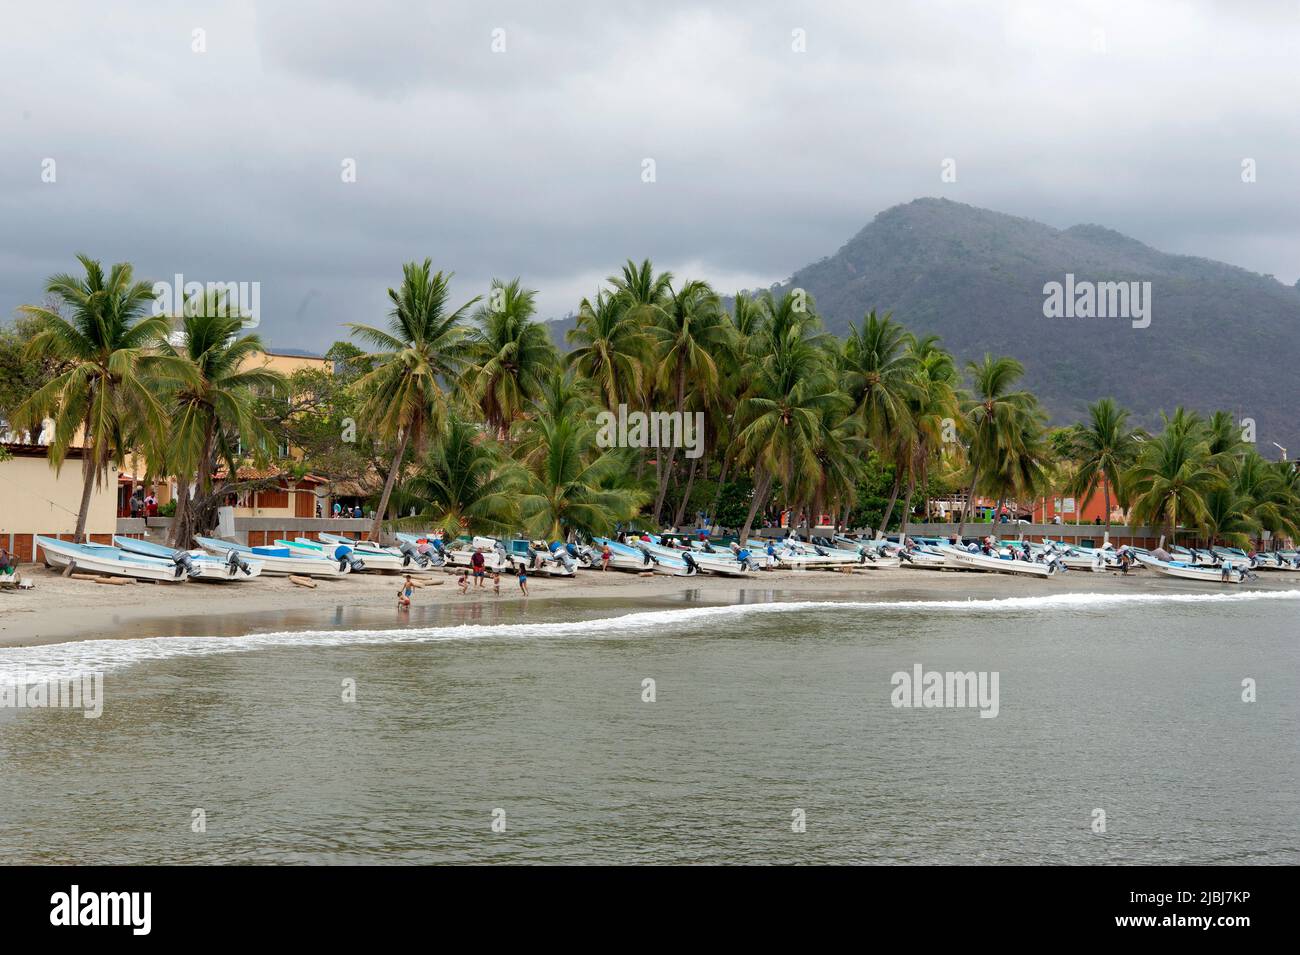 Vista panorámica de barcos de pesca en la playa con palmeras y colinas en Zihuatanejo, México Foto de stock